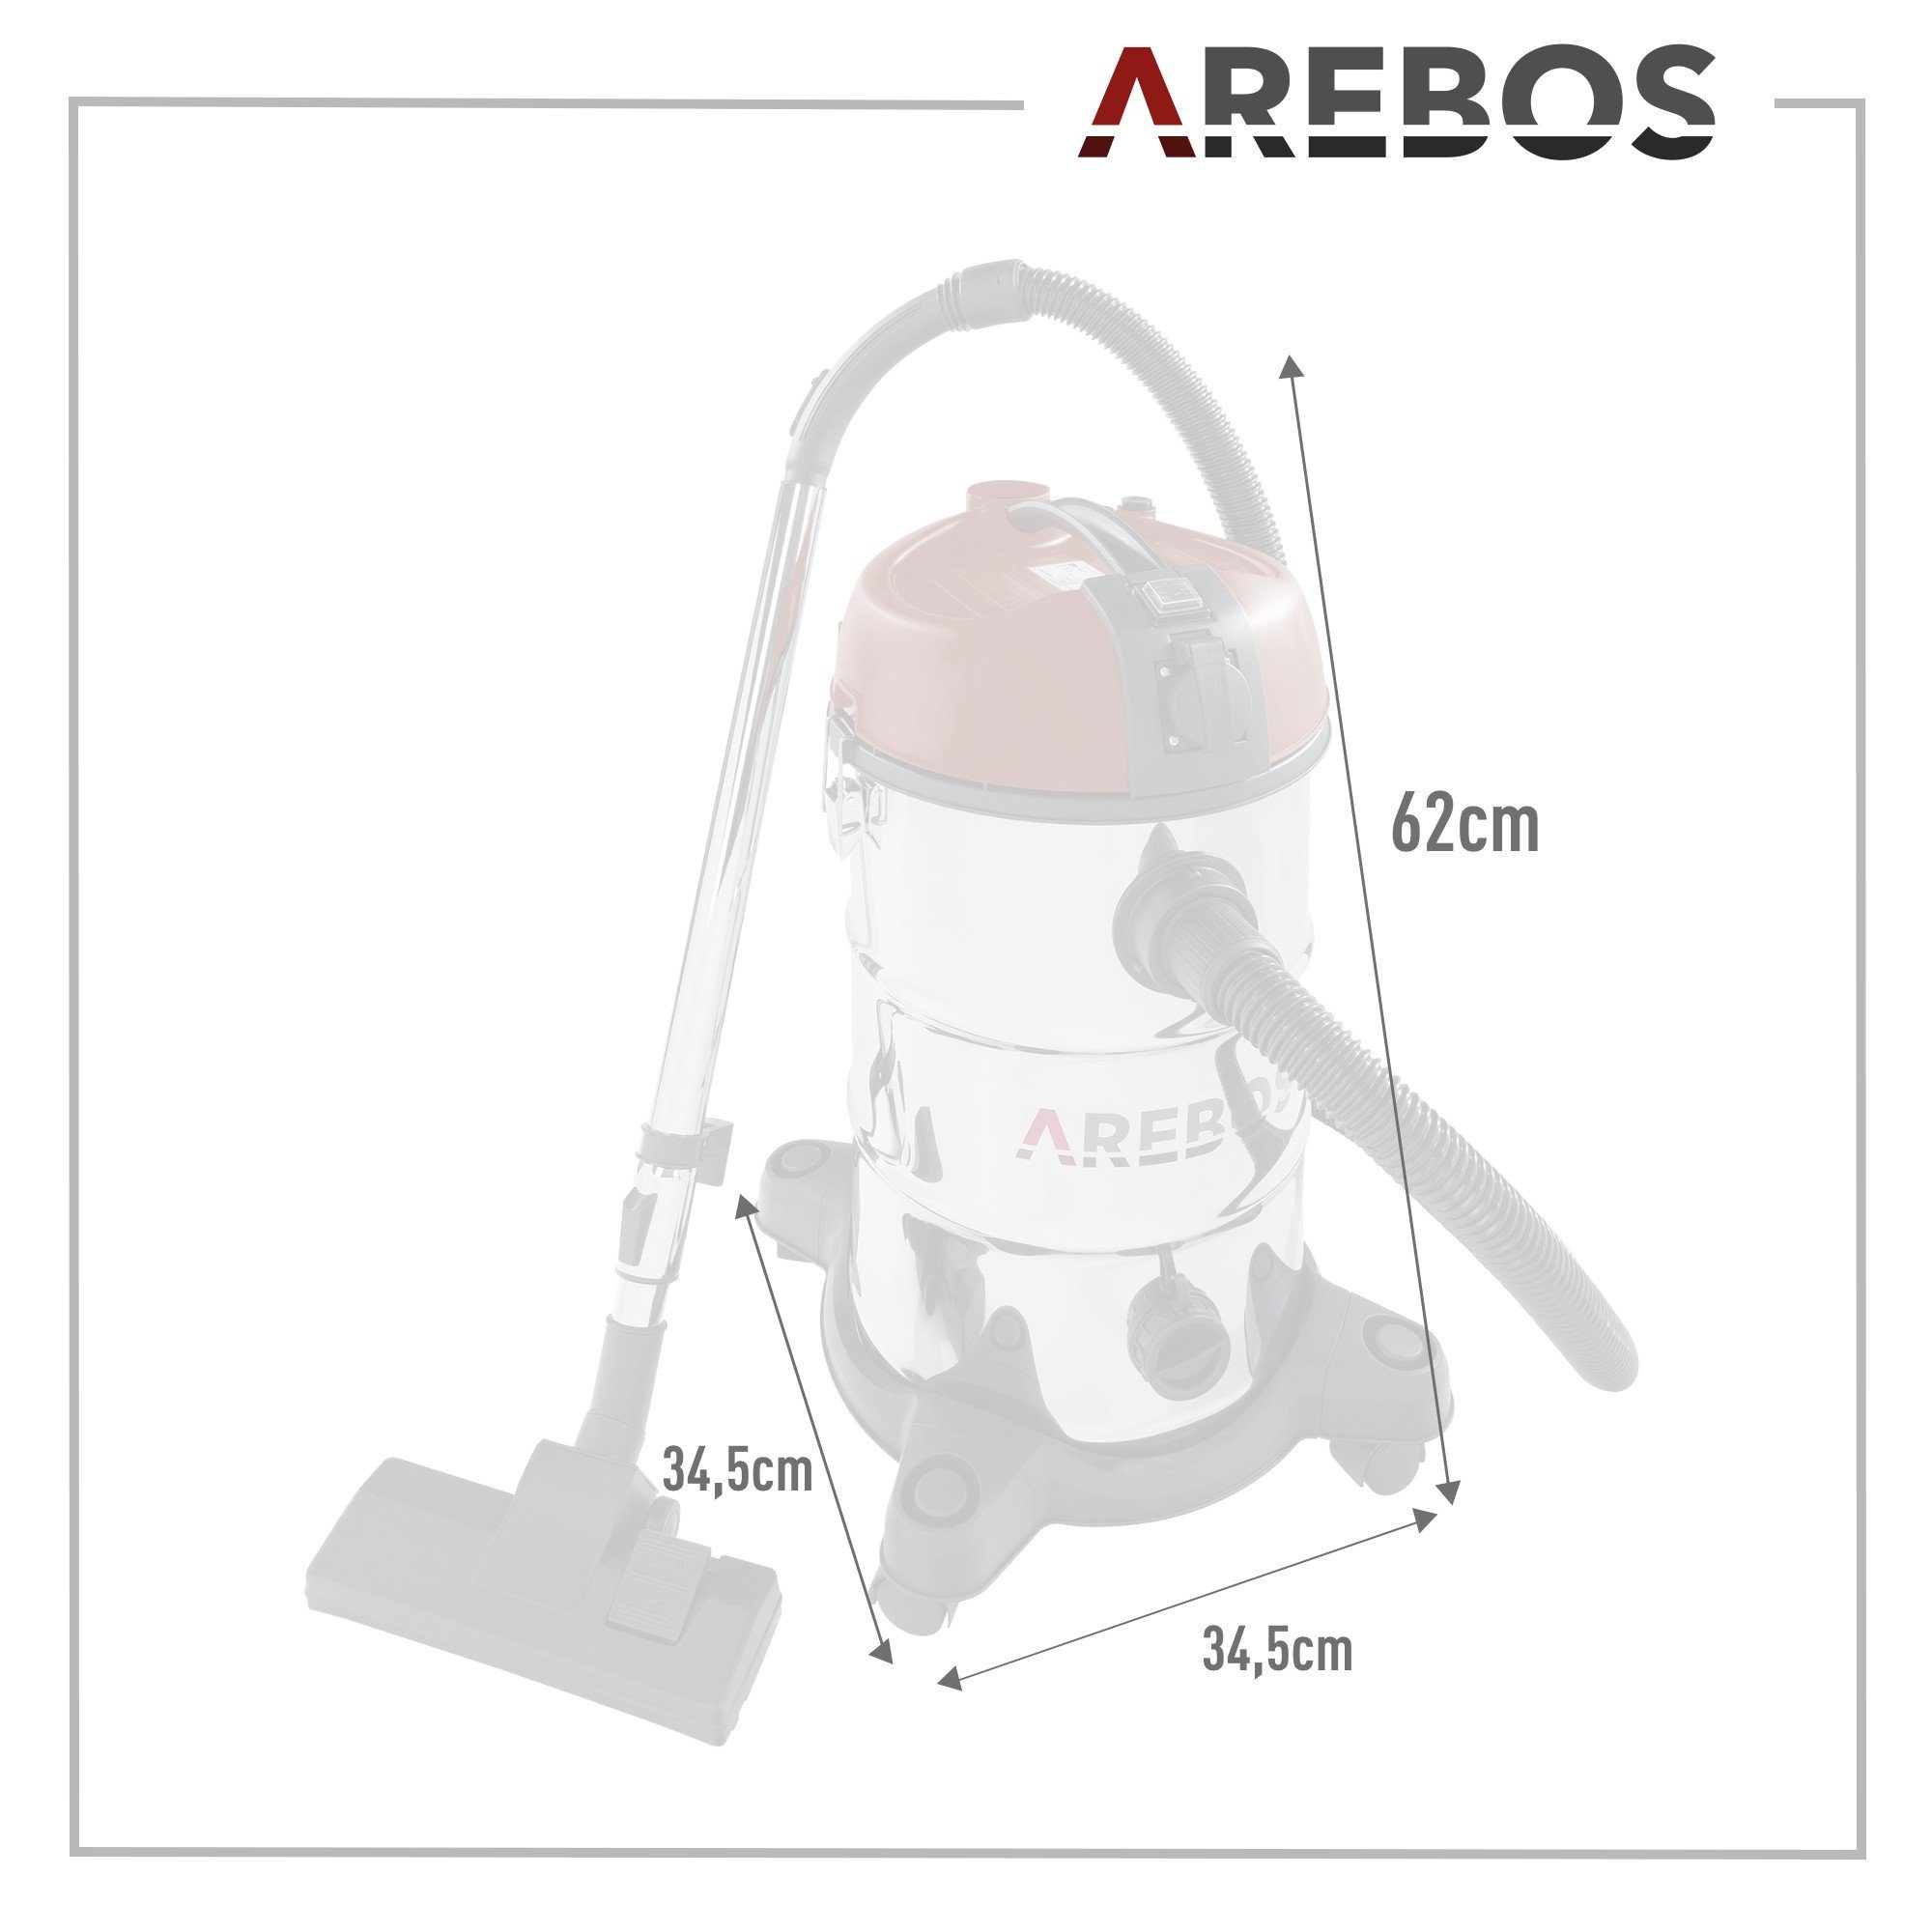 Arebos 30 für mit Entleerung Wassersauger und W, beutelloser sowie Industriesauger Trockensauger als als Wasserablass 1300 Trockensauger, praktischem Verwendbar rot schnelle mit Beutel L, Filter Nass-& 5in1, 1300W,